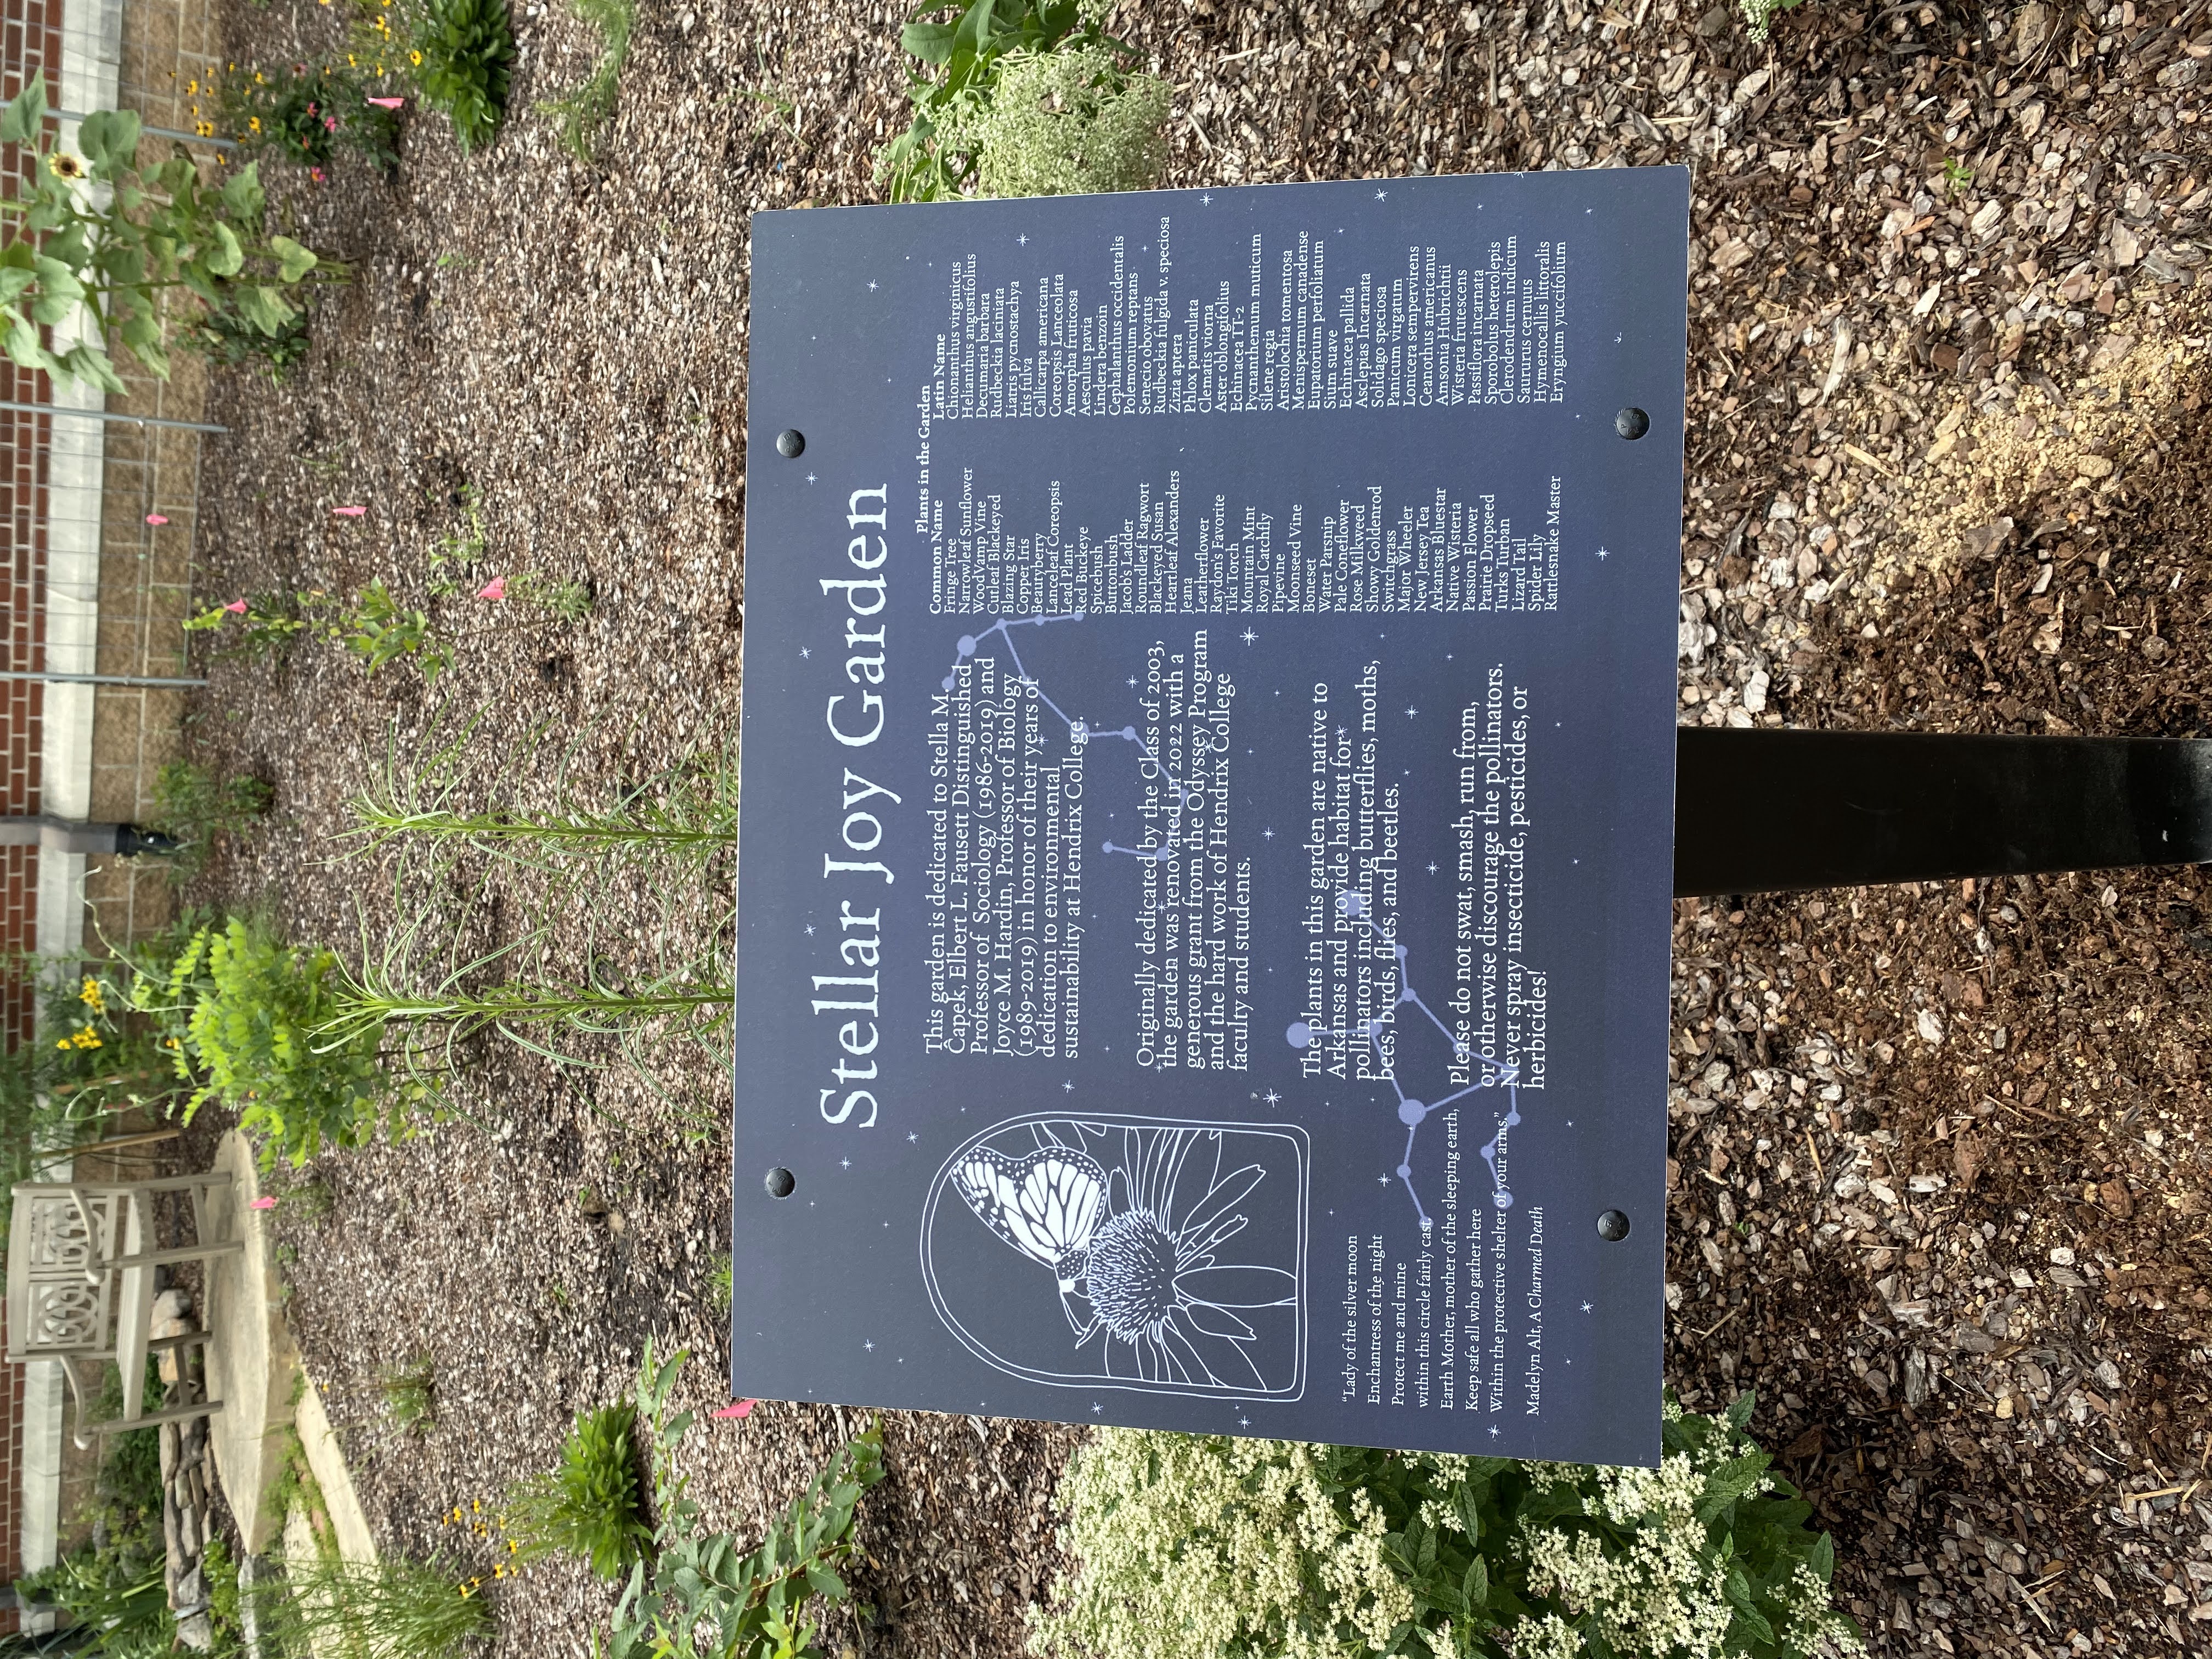 A plaque installed in the Stellar Joy Garden